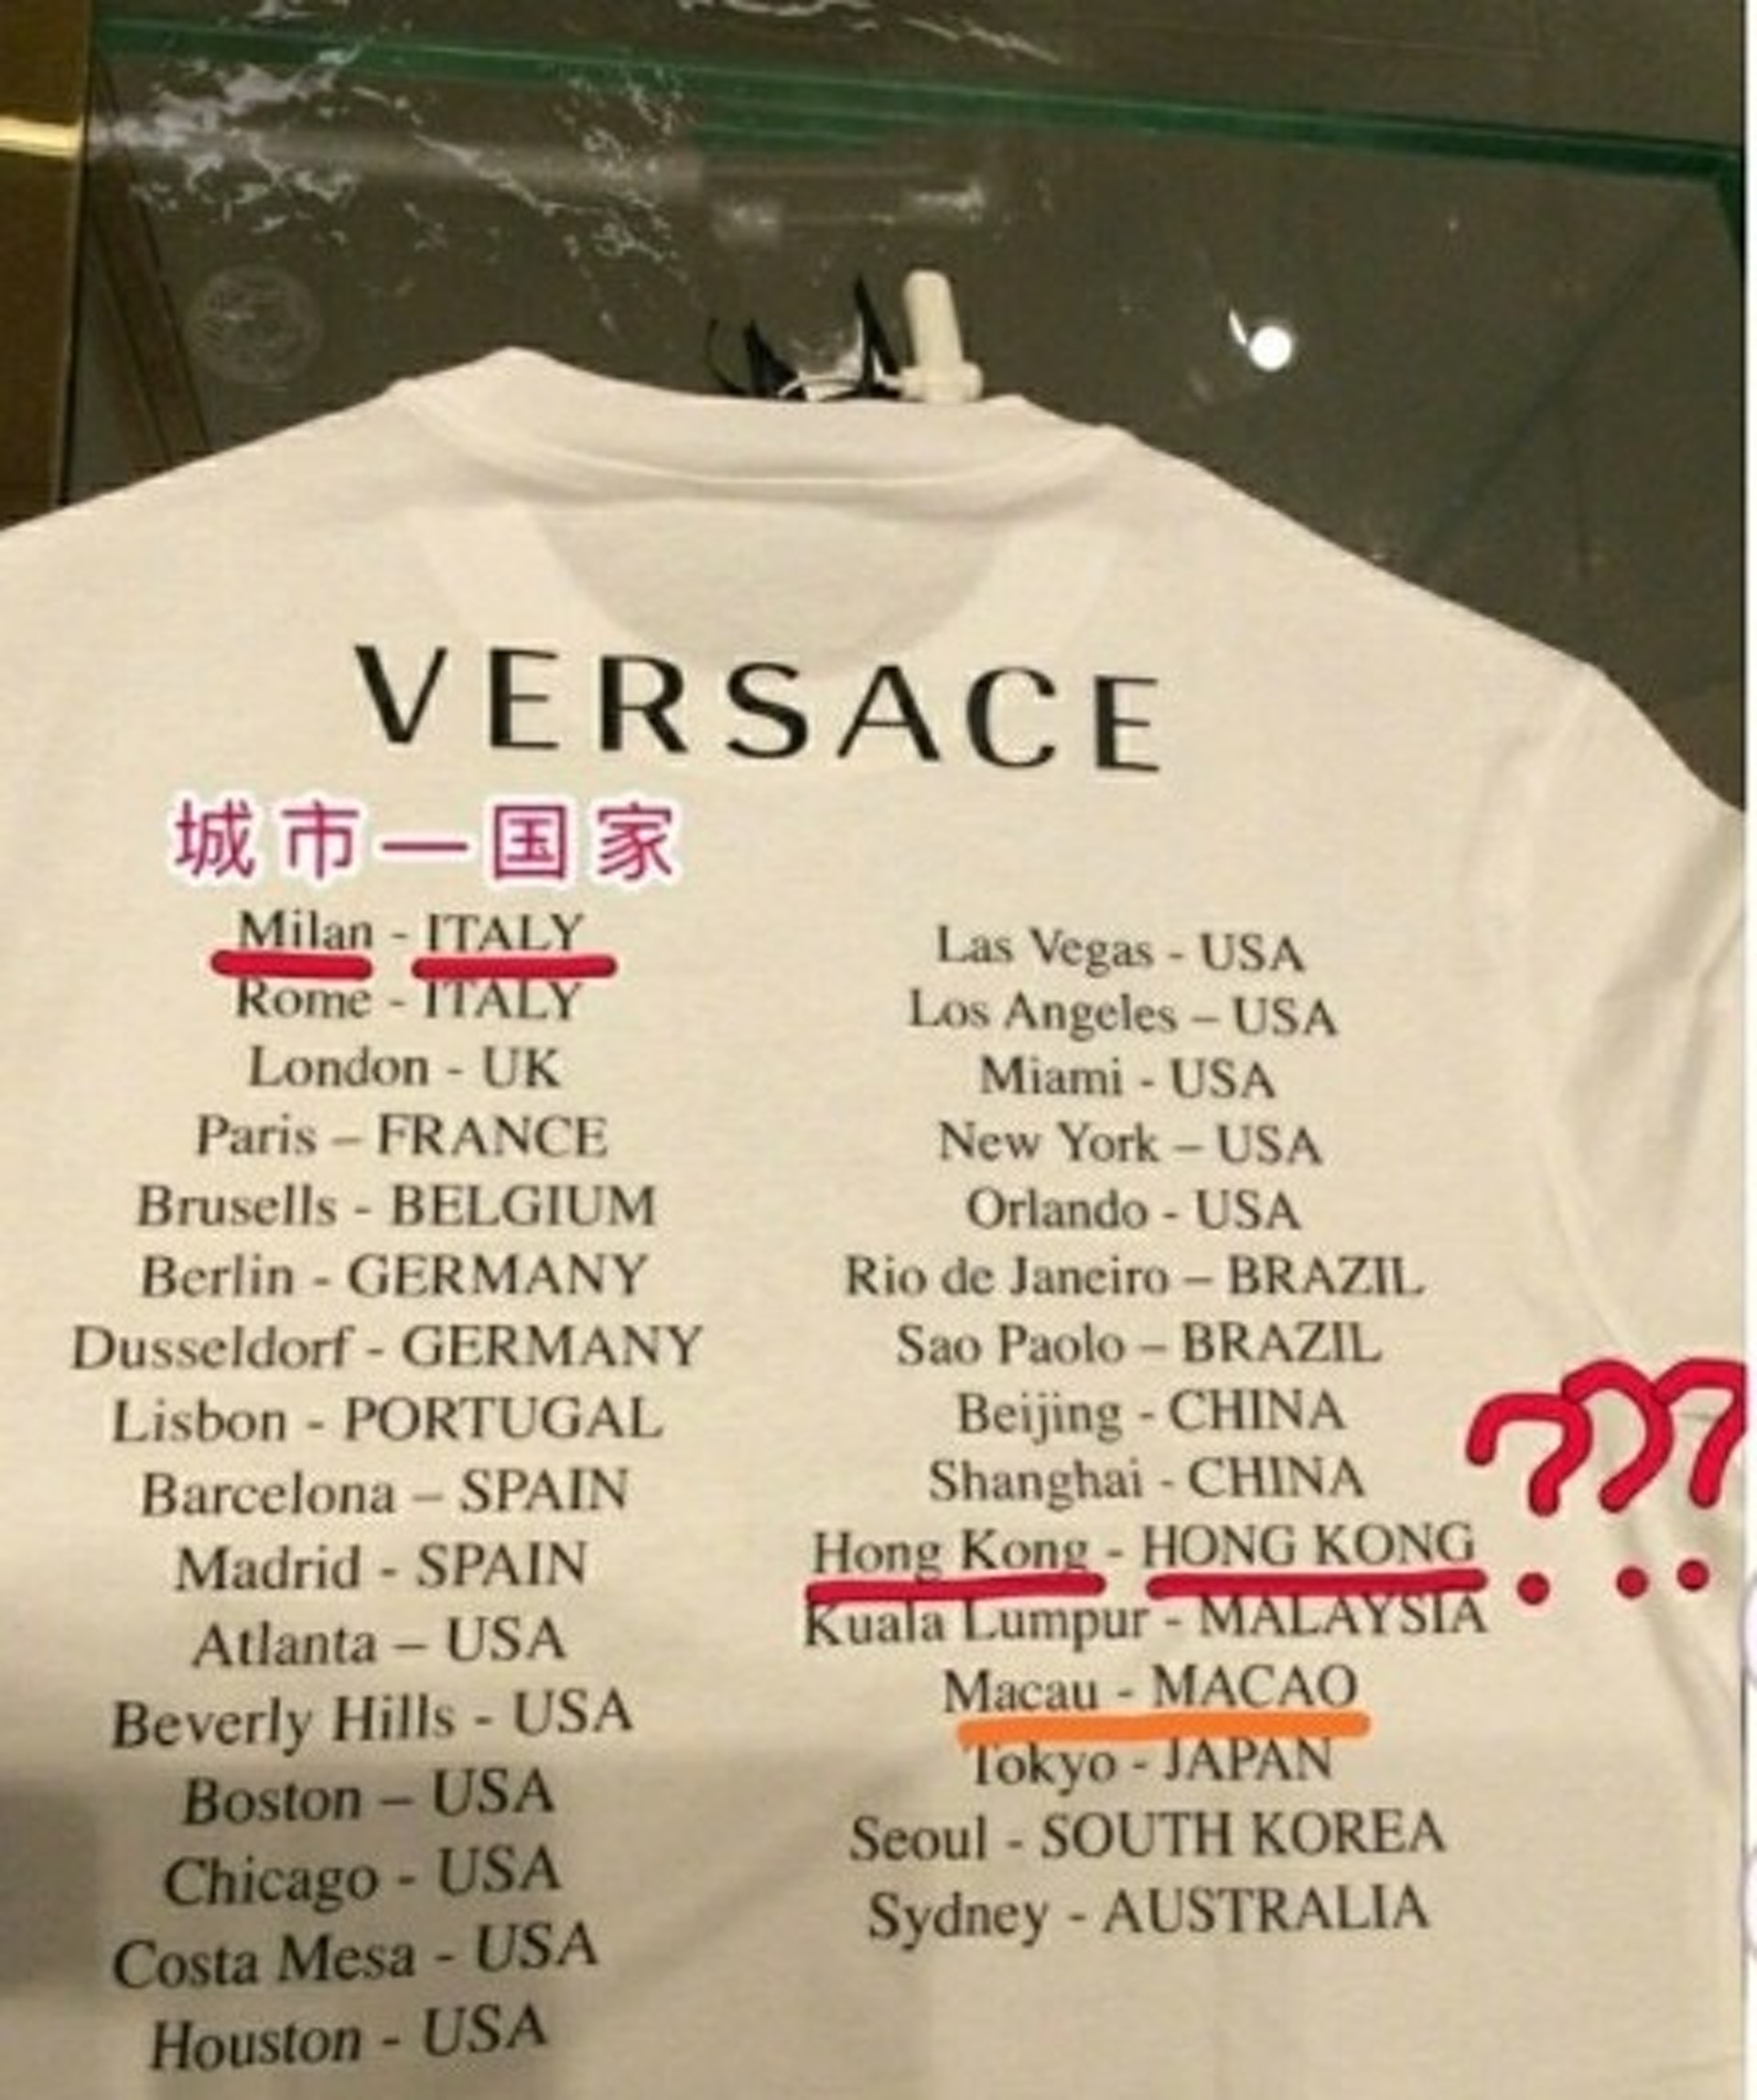 Thiết kế gây tranh cãi của Versace.